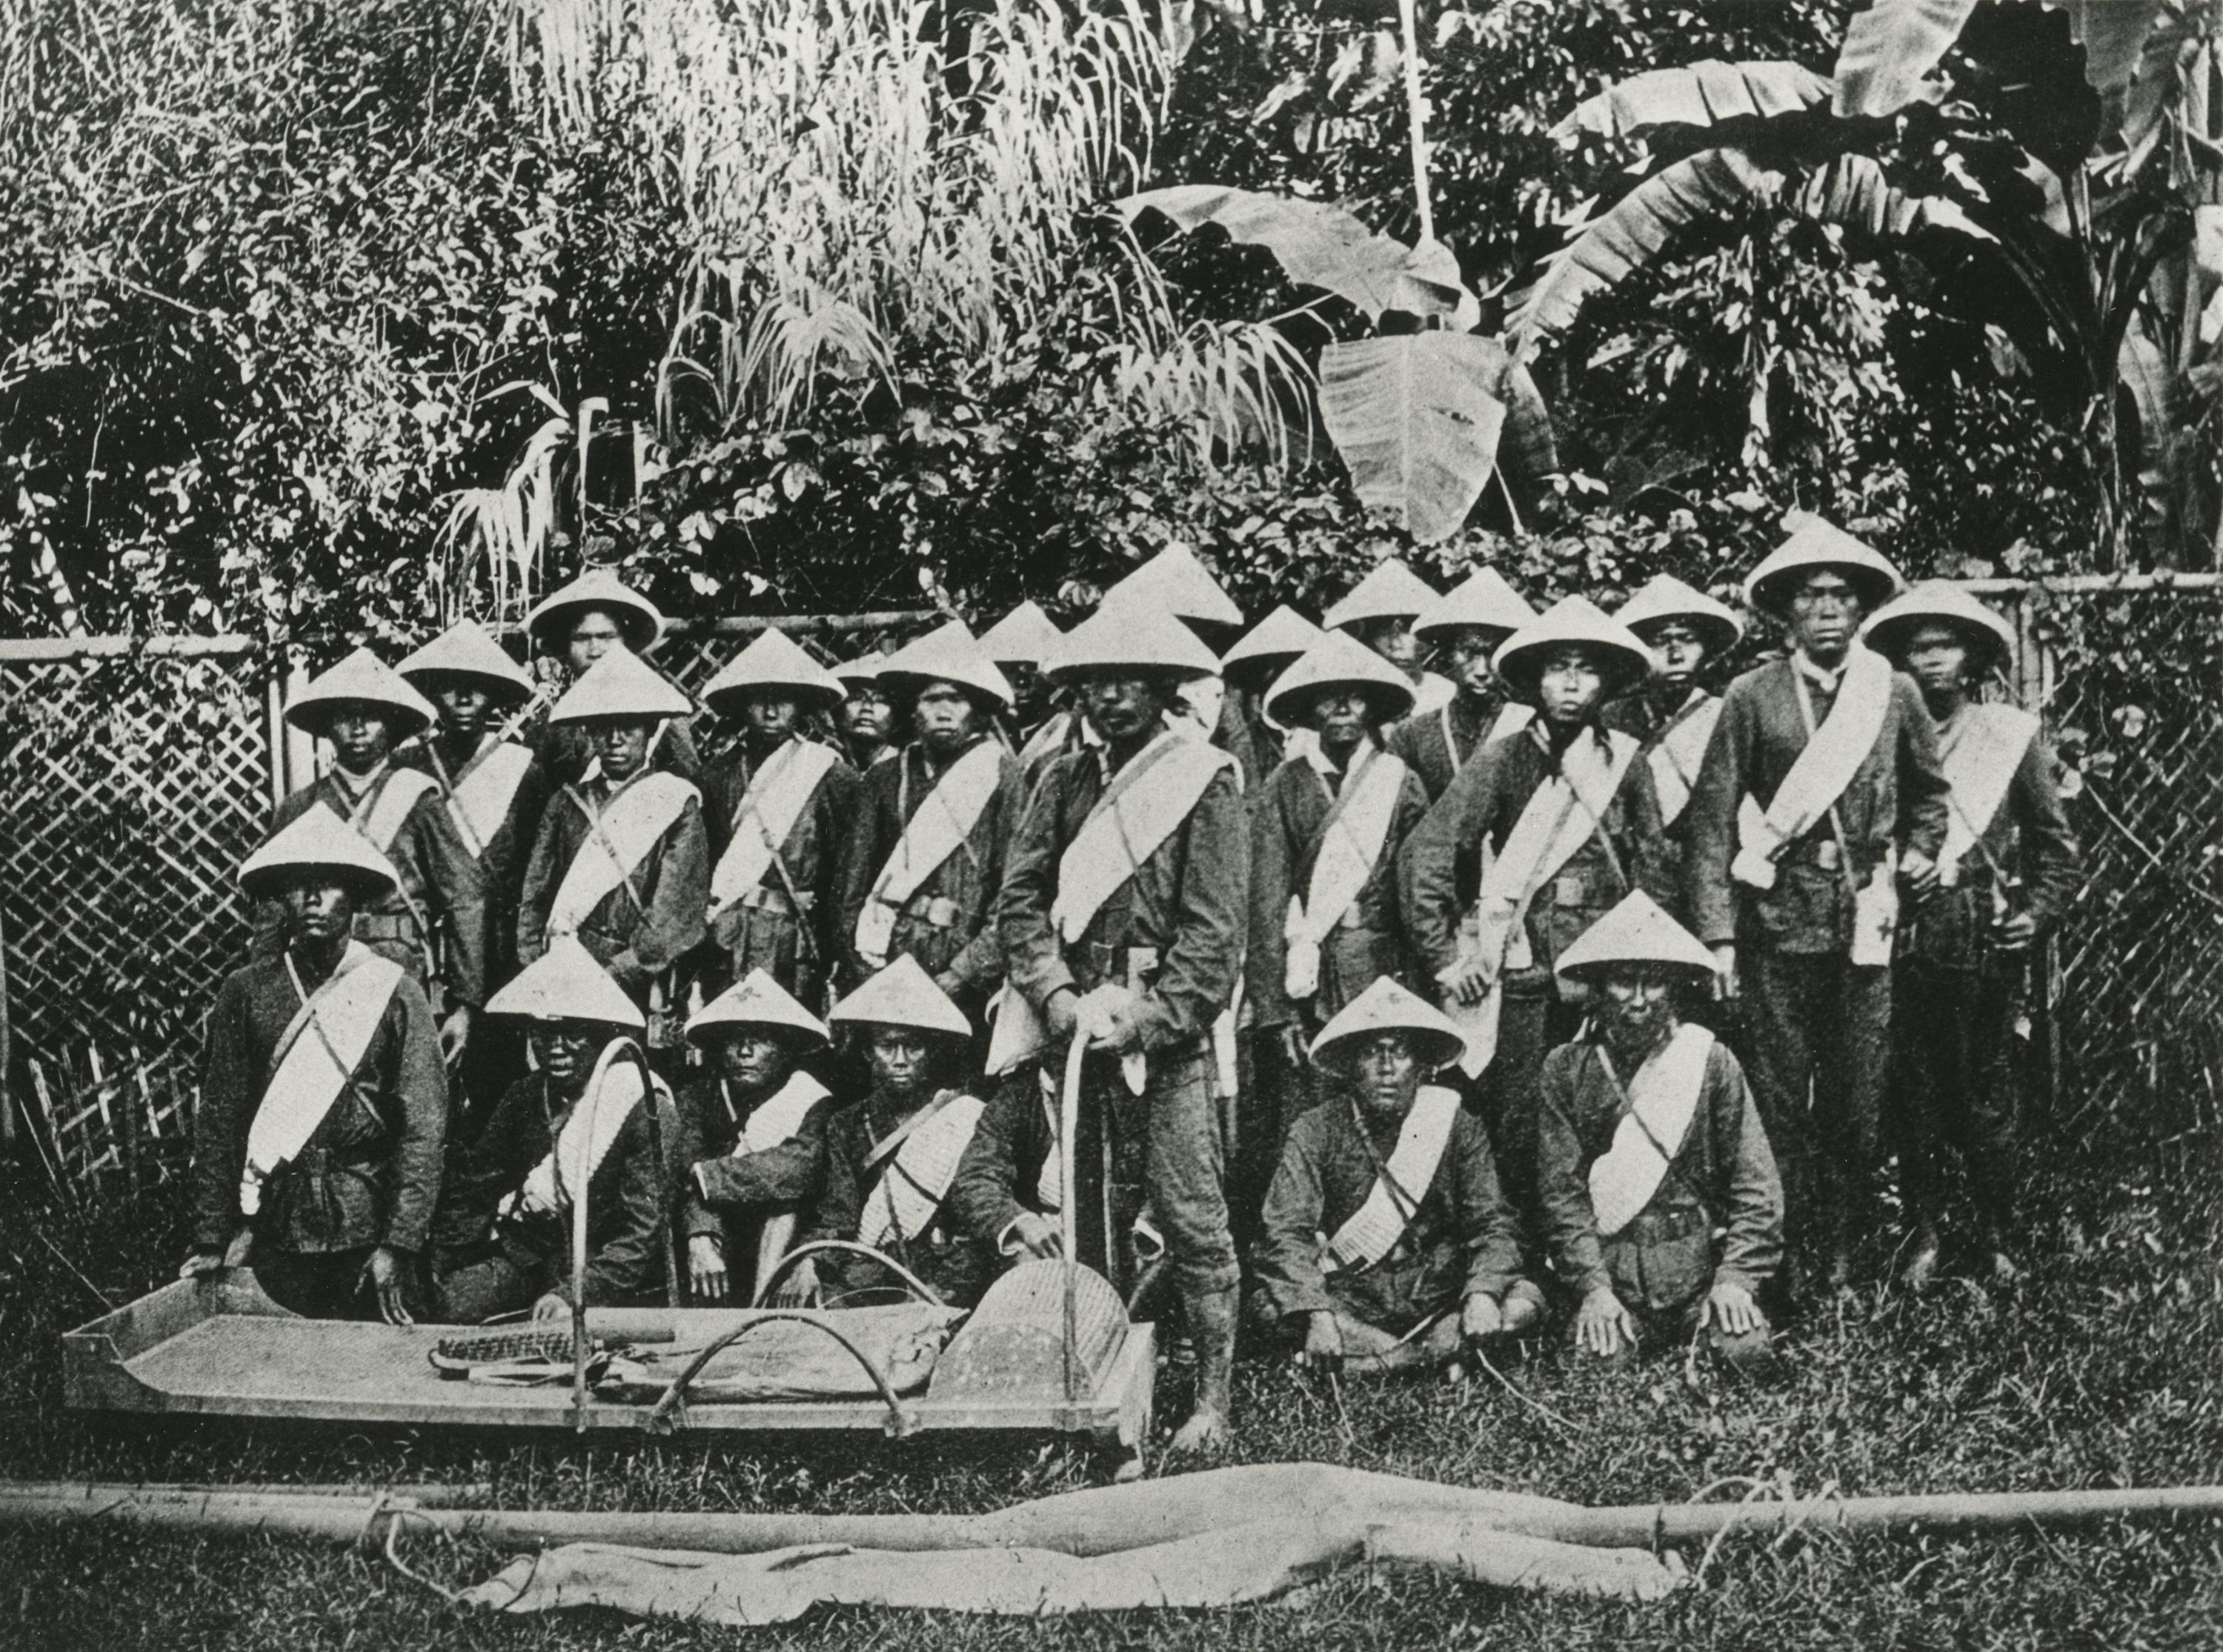 Anonyme, Équipe d’ambulanciers de la Croix Rouge, Sumatra, Indonésie, 1873 [Archives MICR (DR)]